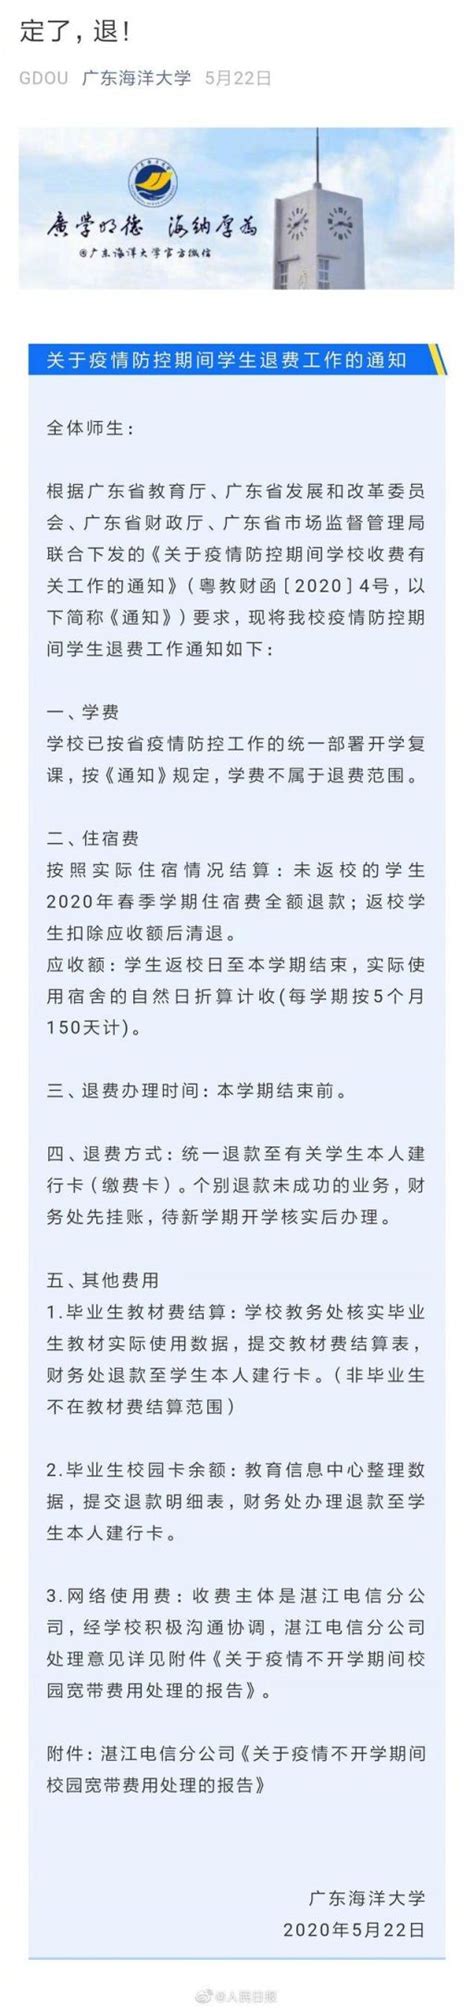 2020各高校宣布免收春季学期住宿费- 重庆本地宝